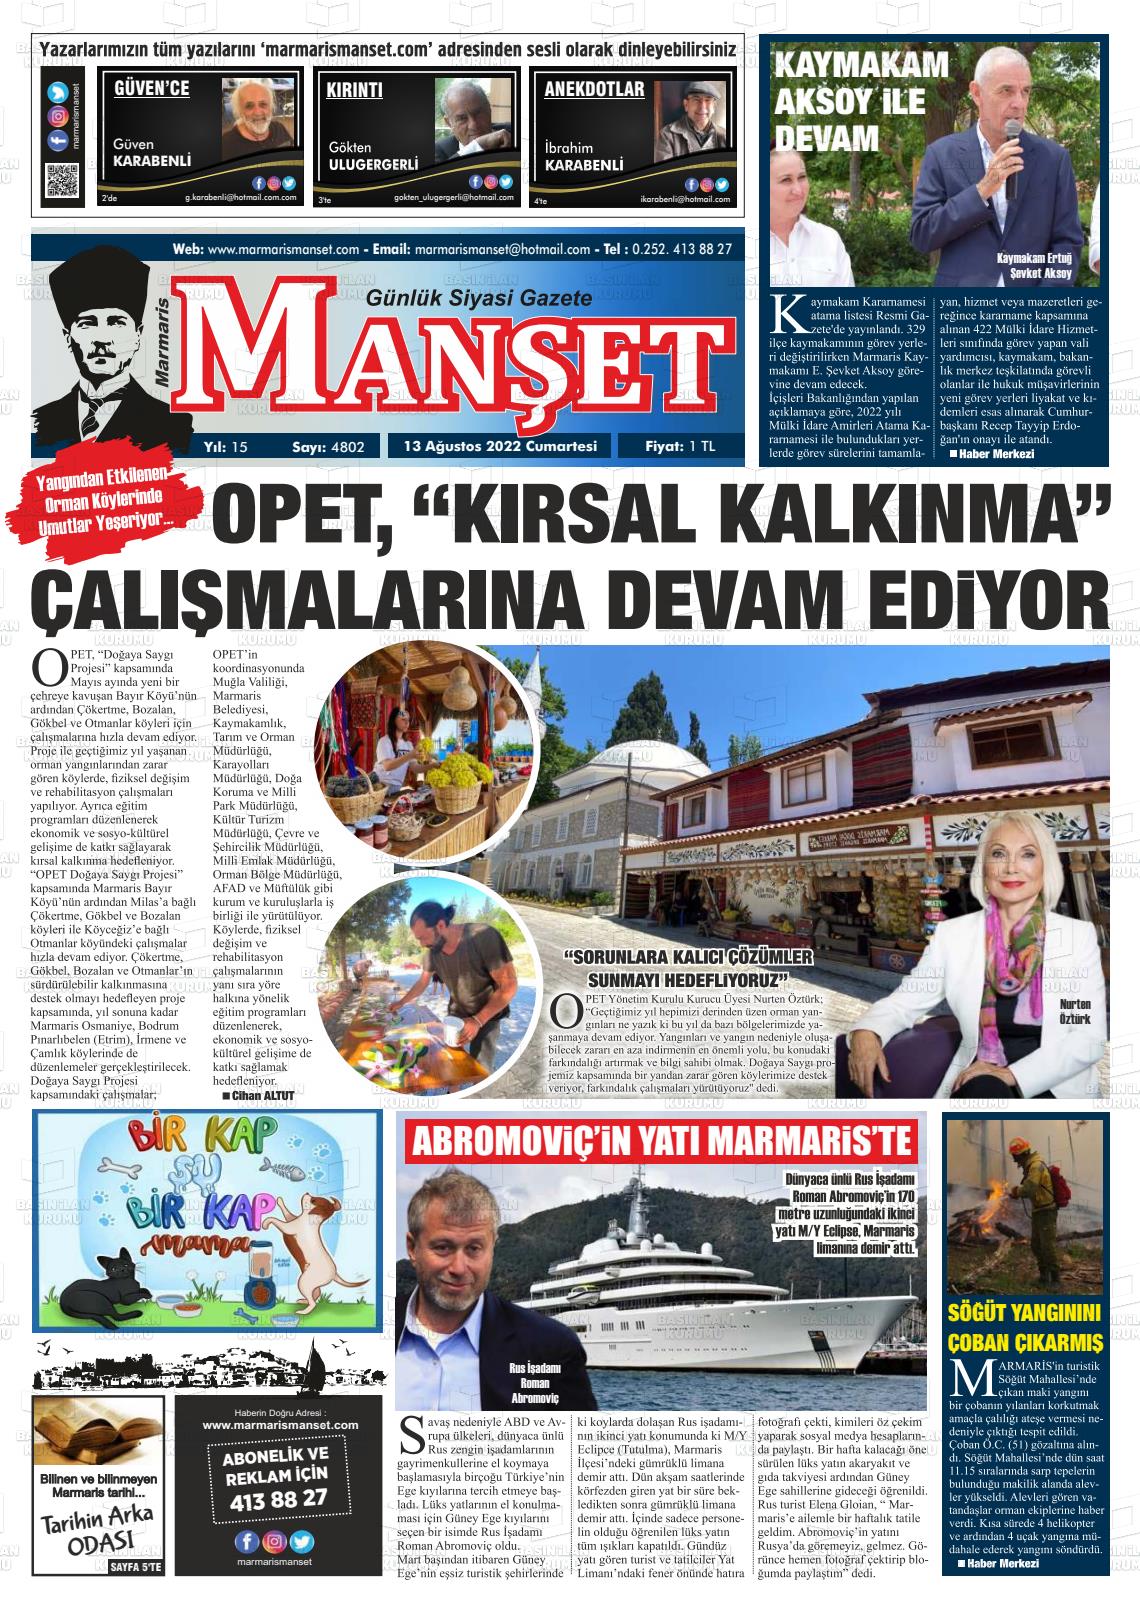 13 Ağustos 2022 Marmaris Manşet Gazete Manşeti